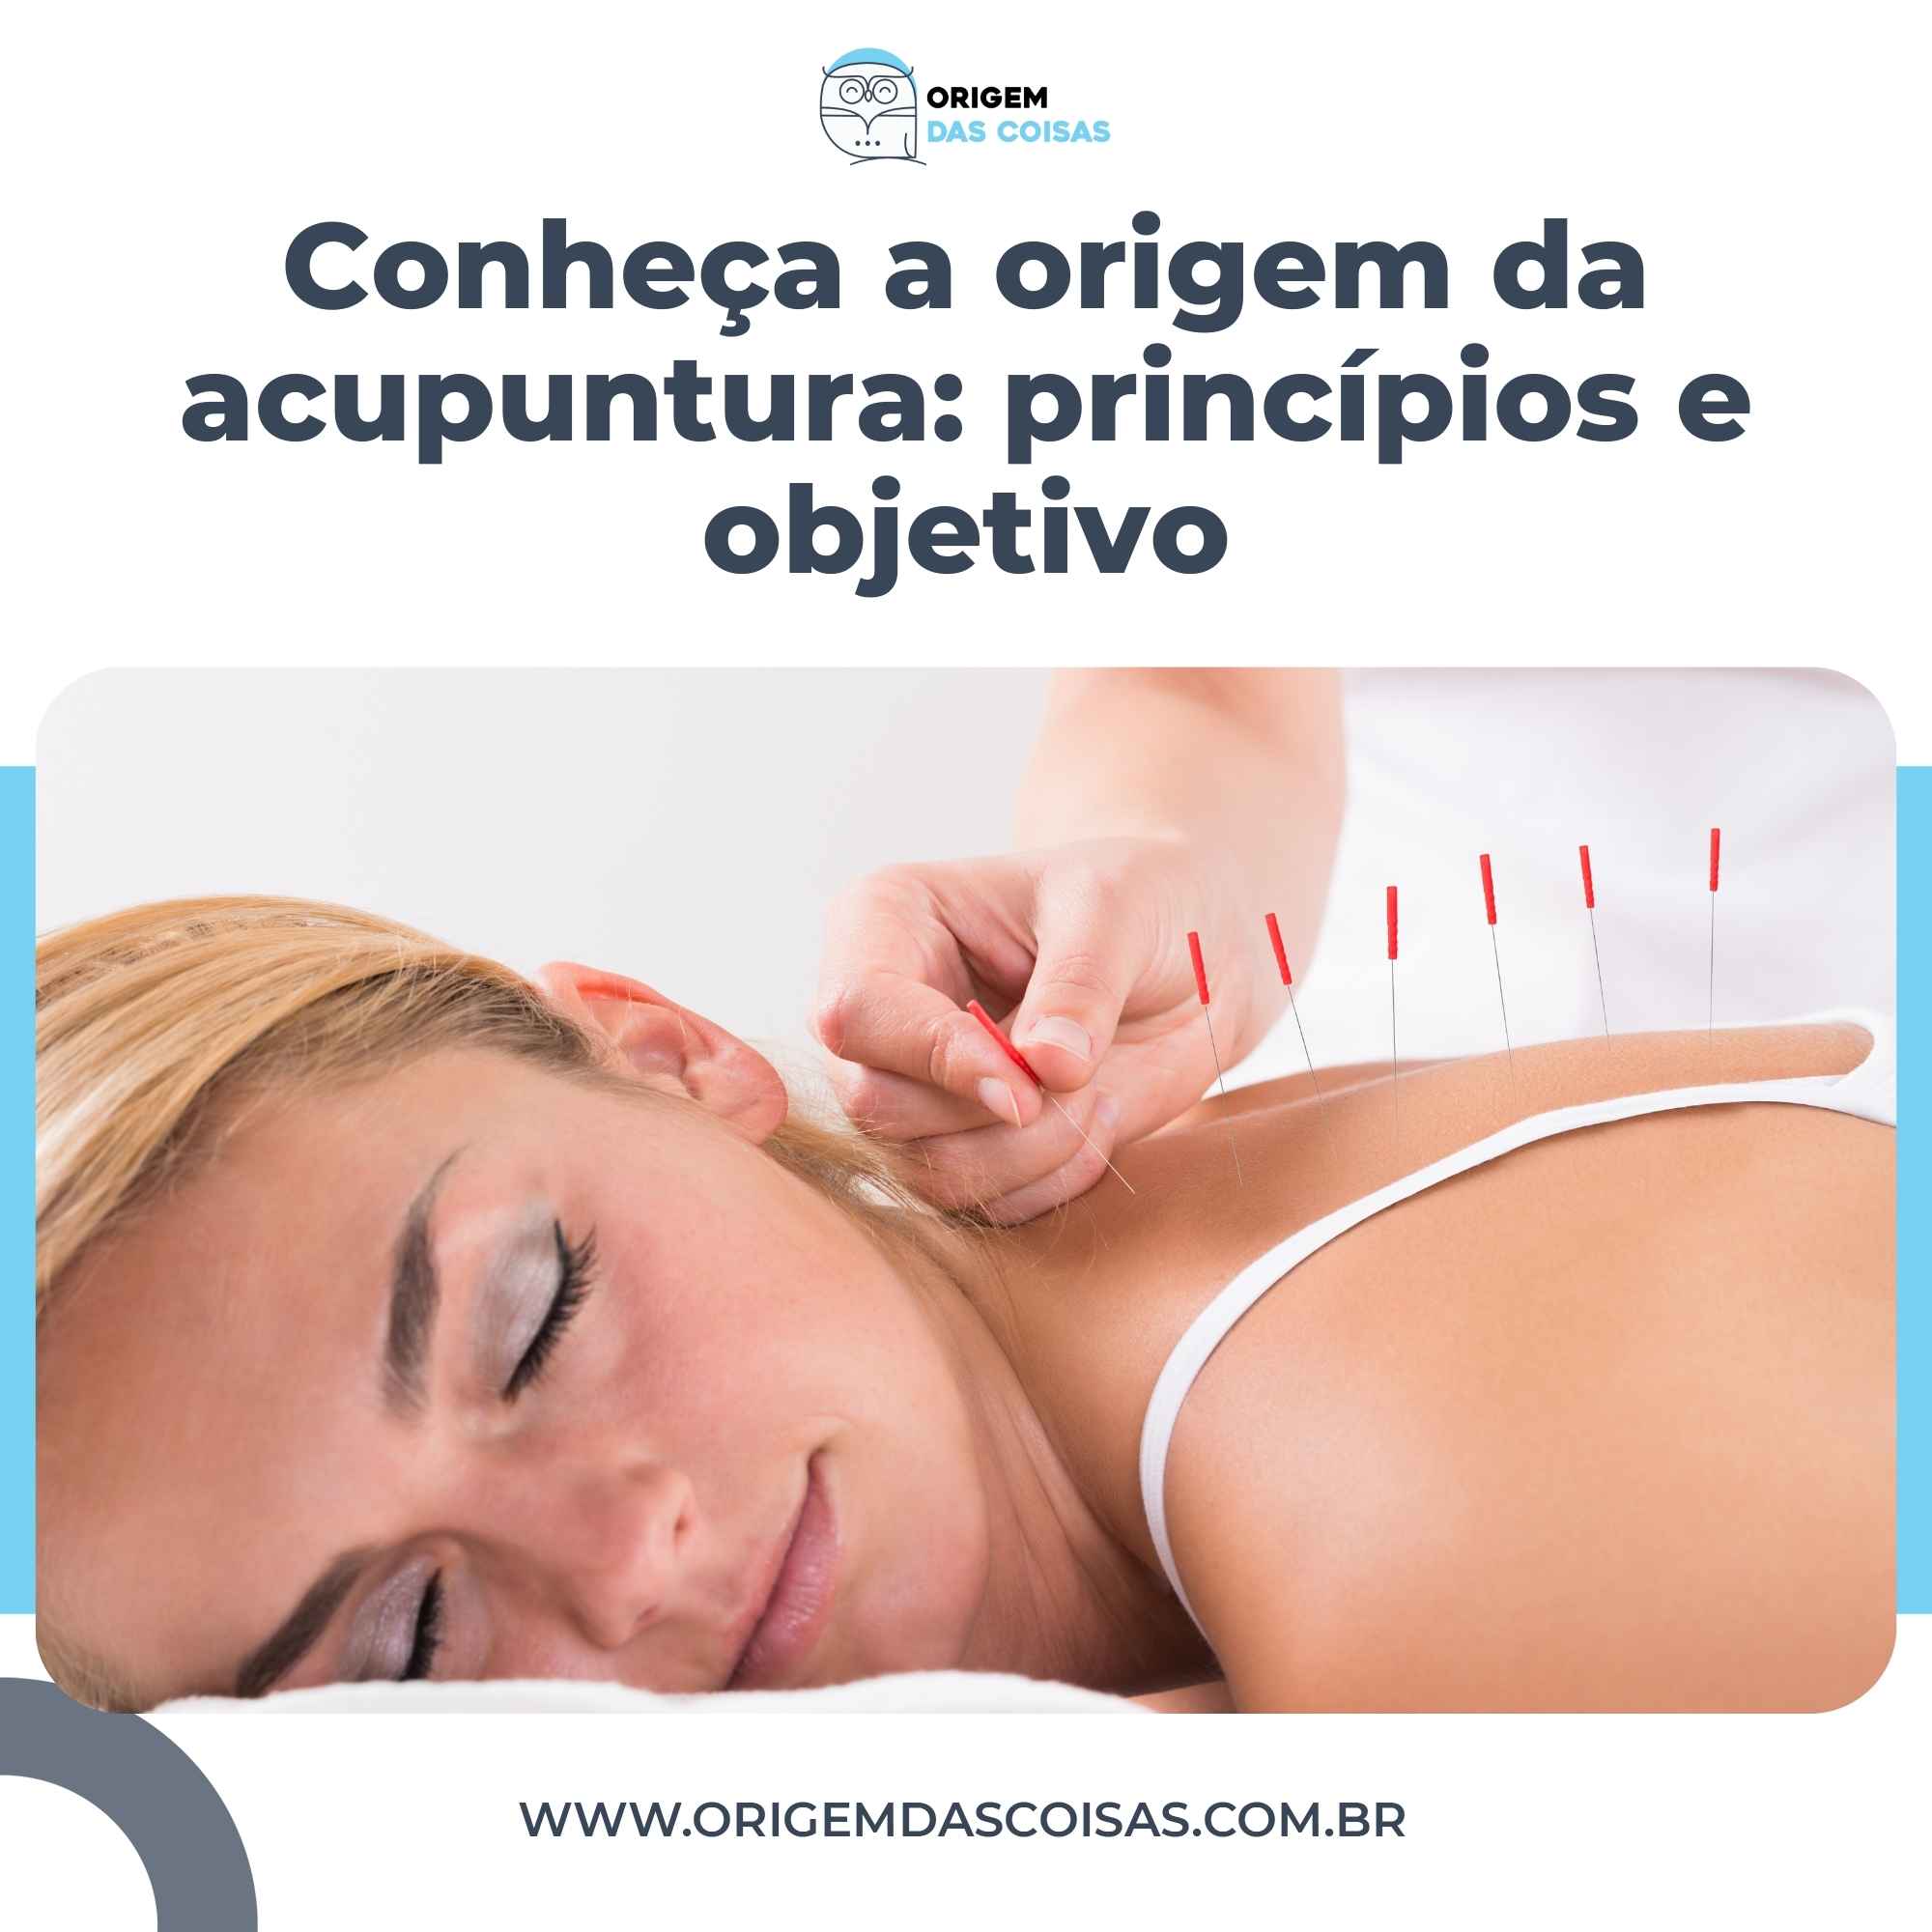 Conheça a origem da acupuntura princípios e objetivo